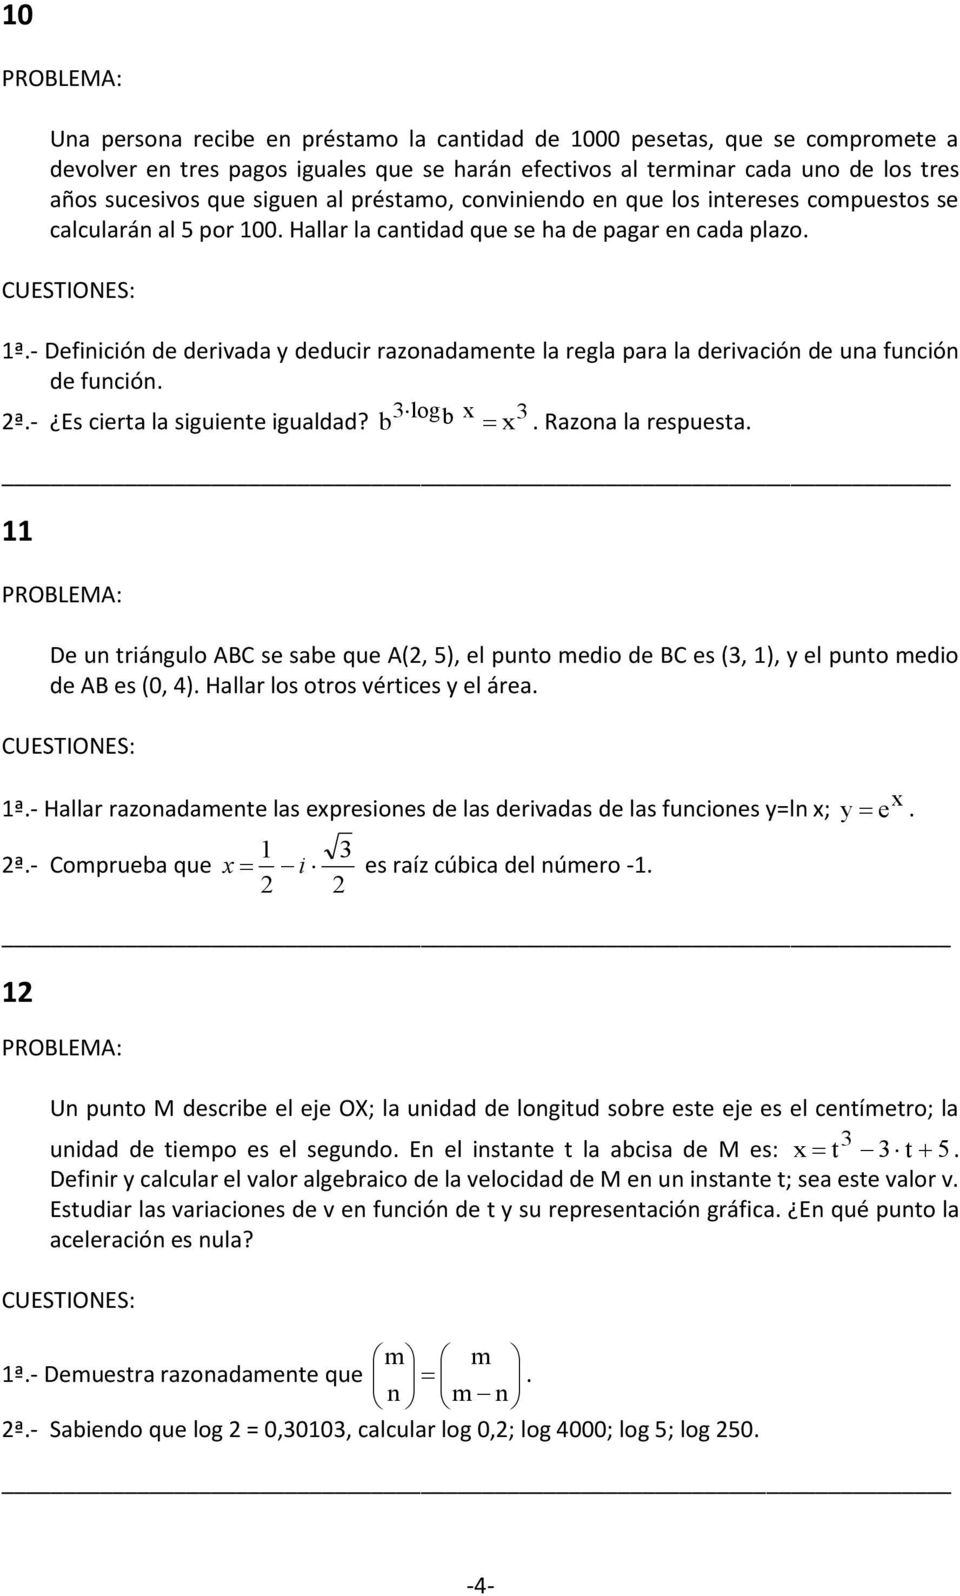 - Definición de derivada y deducir razonadamente la regla para la derivación de una función de función. ª.- Es cierta la siguiente igualdad? b logb. Razona la respuesta.